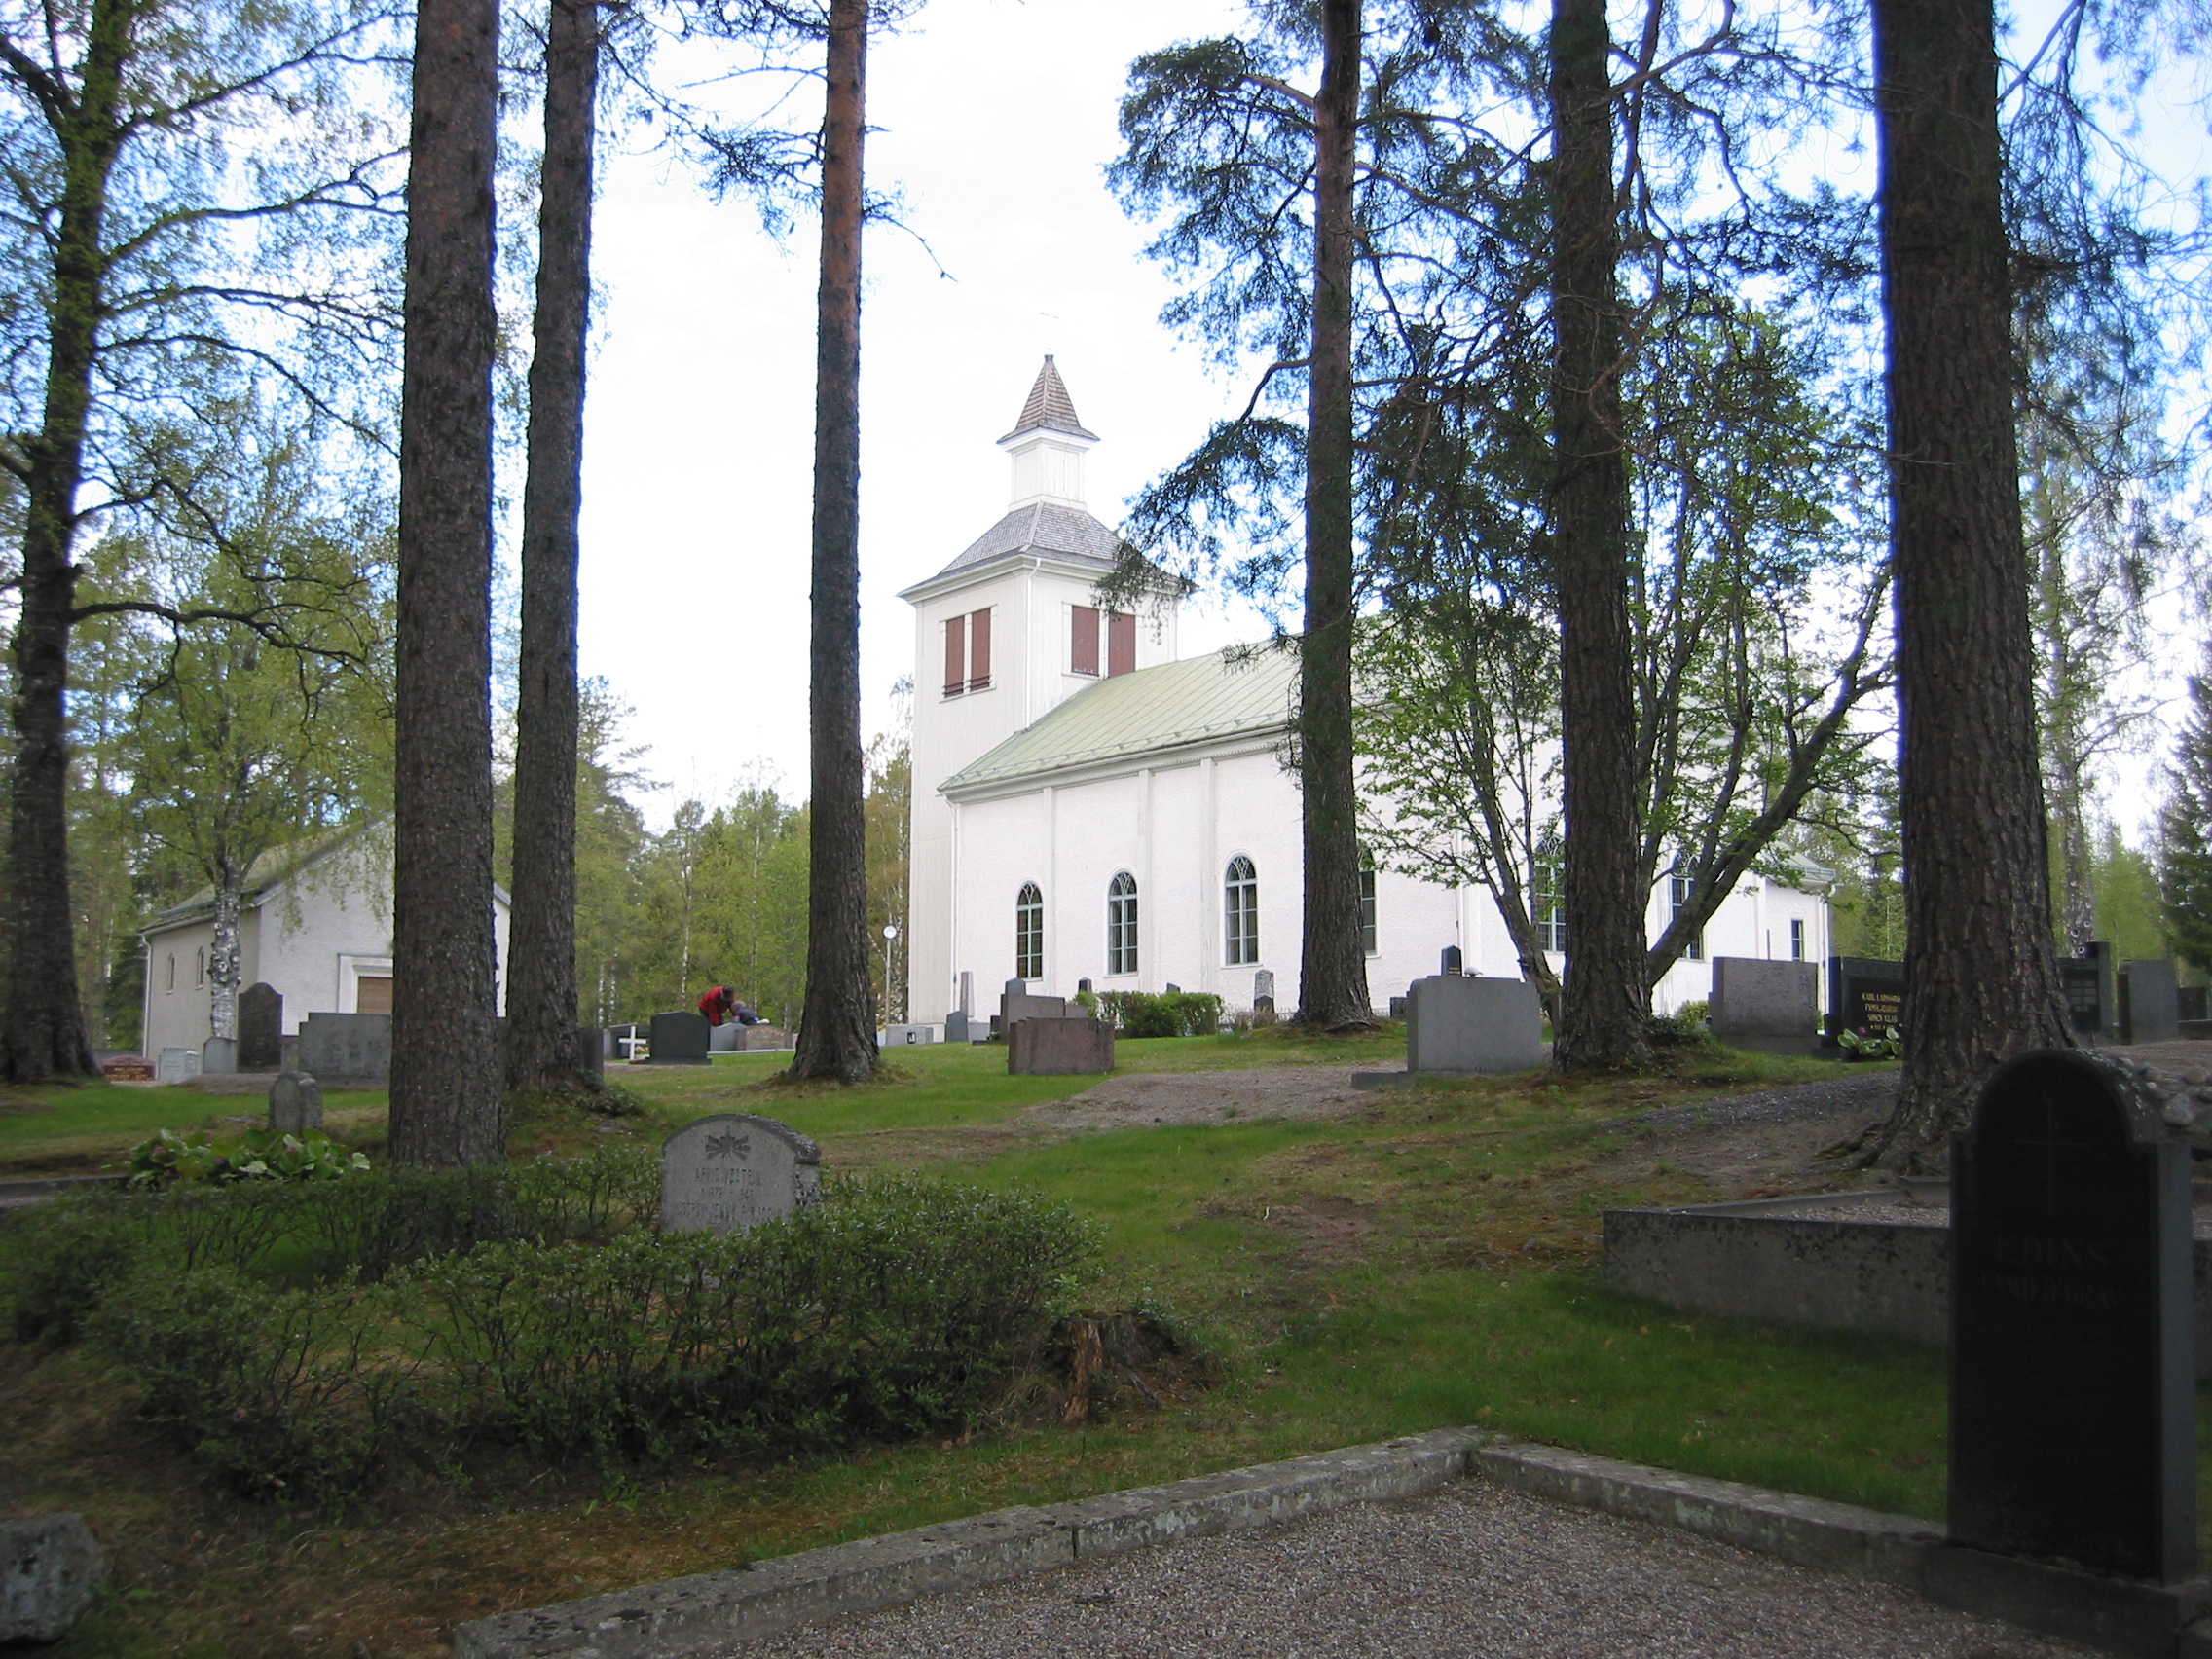 Trehörningsjö Kyrka med omgivande kyrkogård, vy av kyrkan från sydöst.